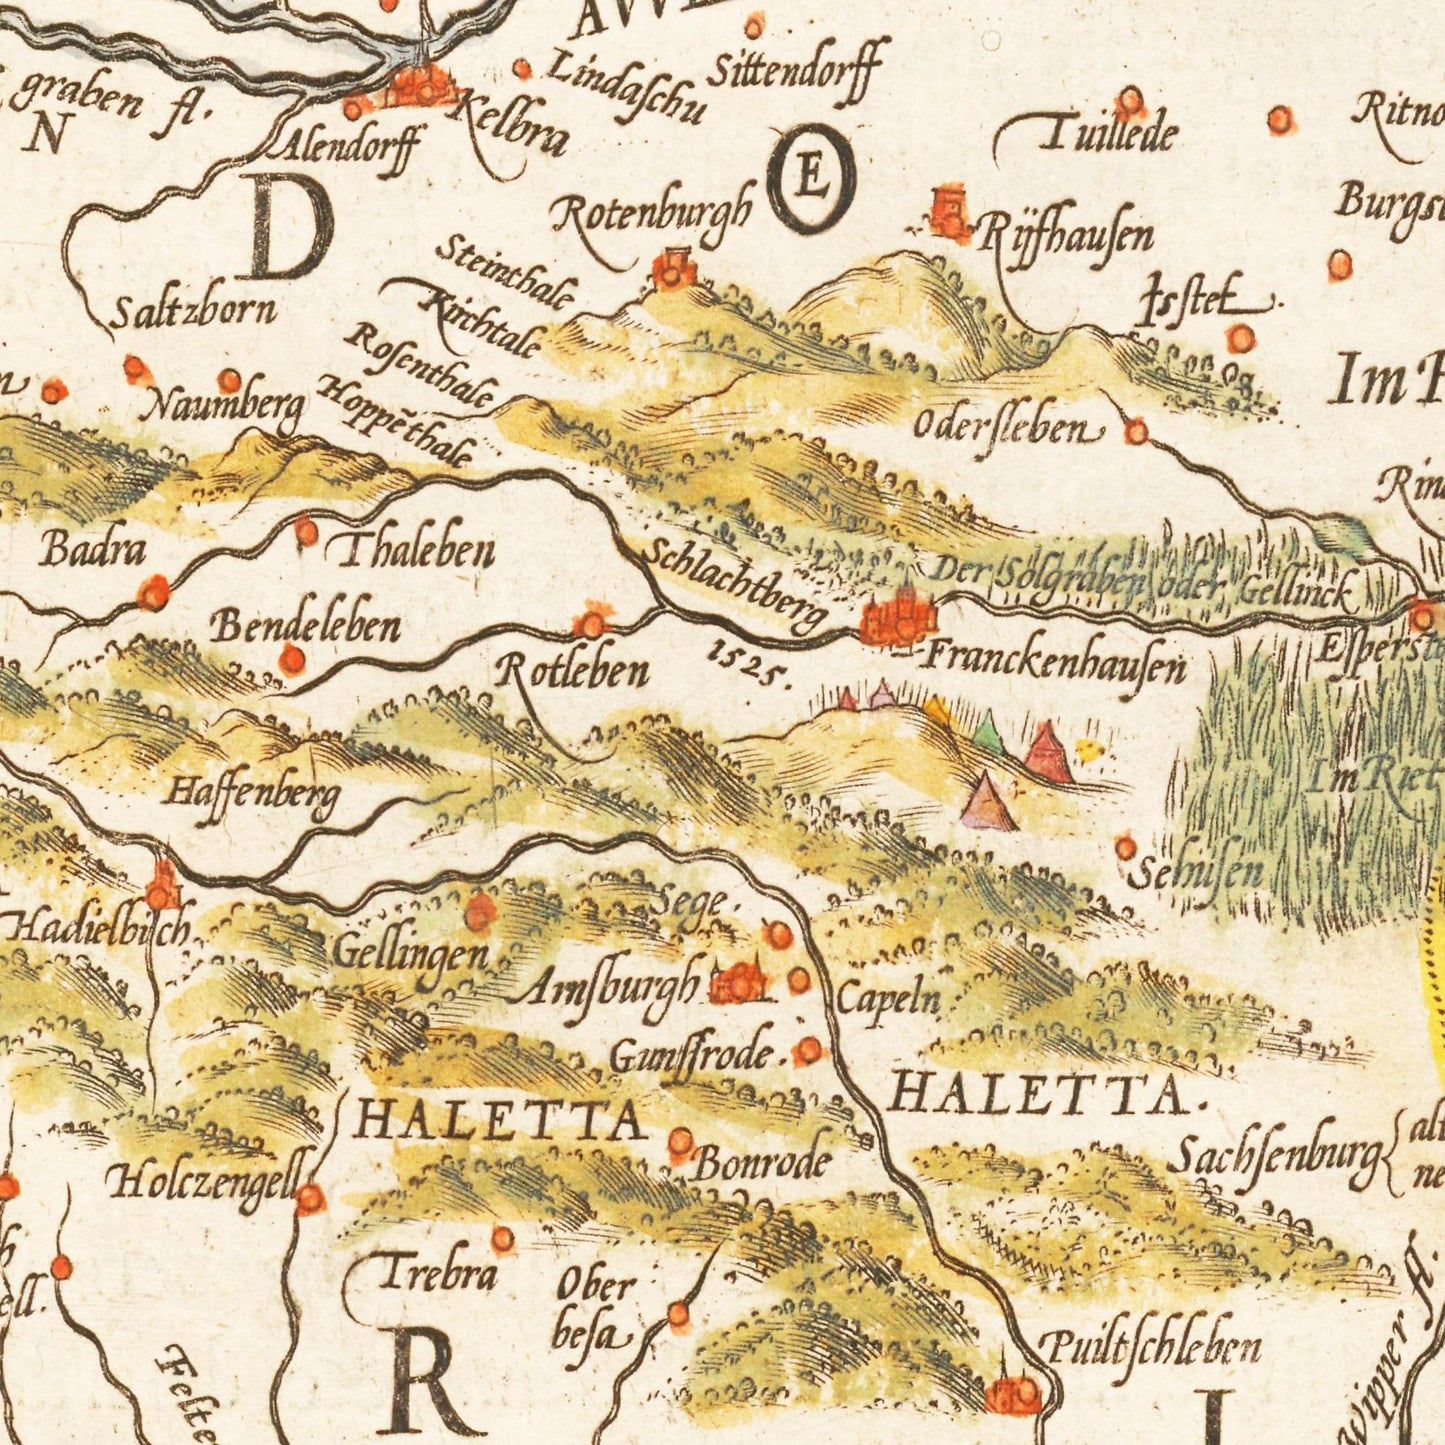 Historische Landkarte Mansfeld um 1609